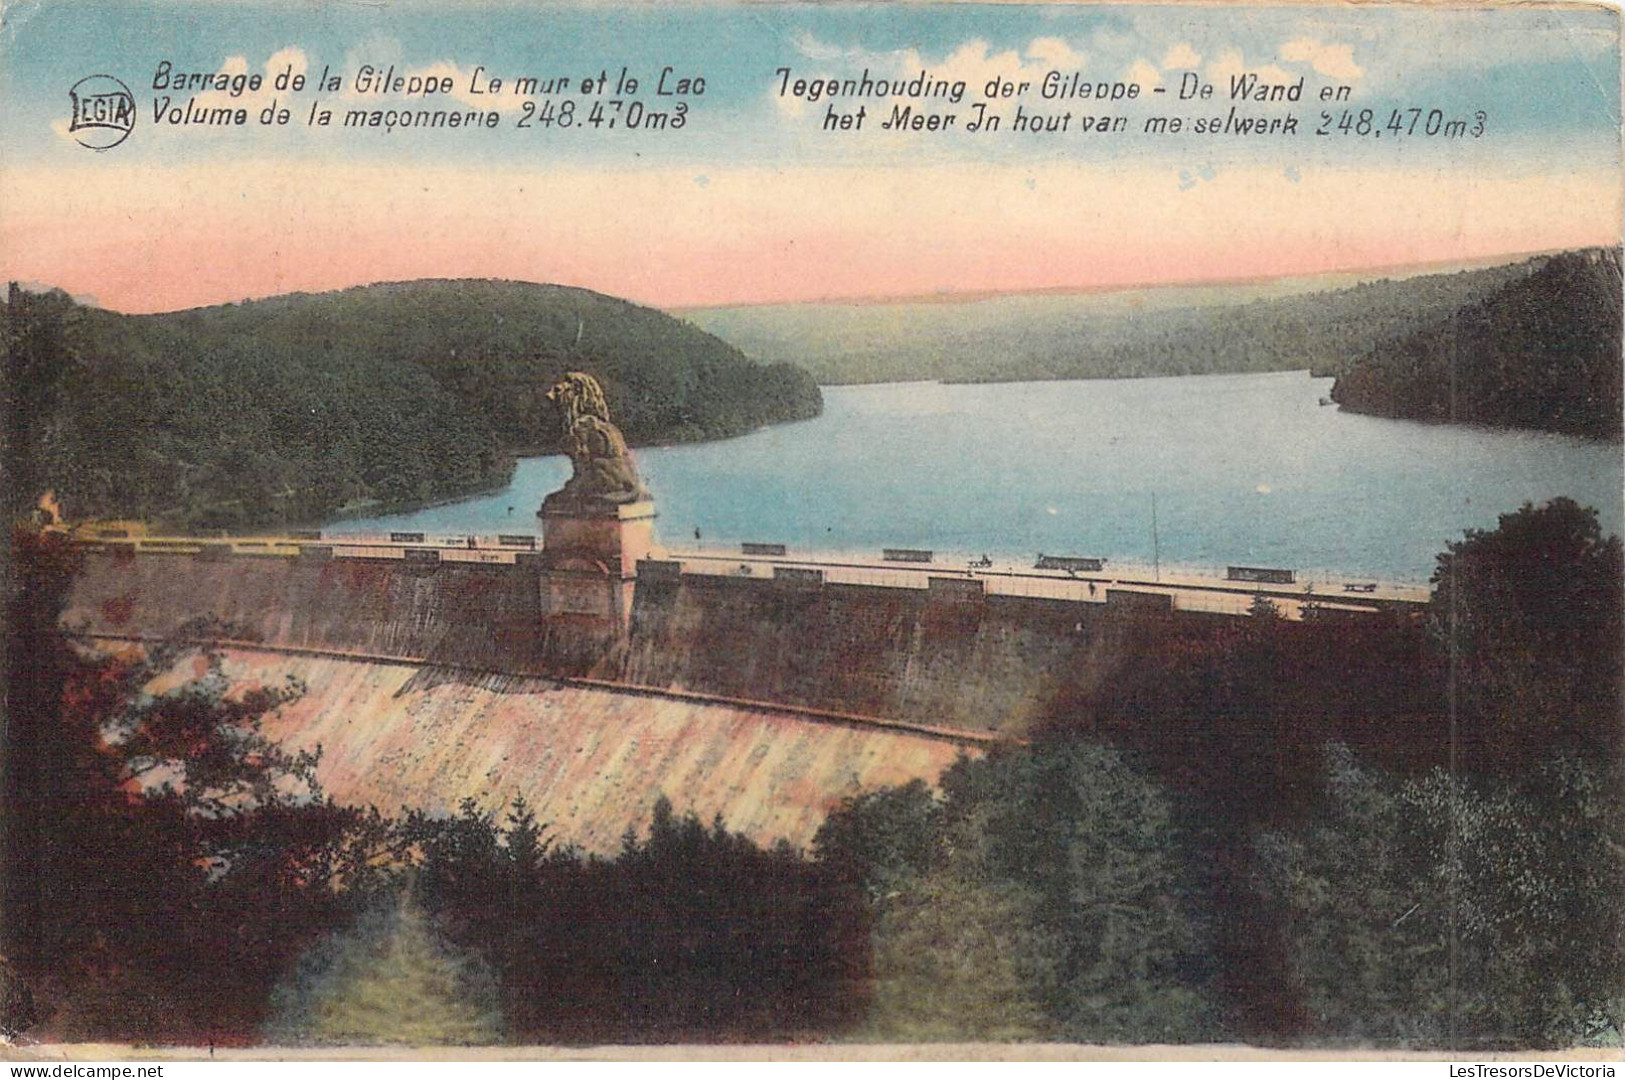 BELGIQUE - GILEPPE - Barrage De La Gileppe Le Mur Et Le Lac - Volume De La Maconnerie 248 470 M - Carte Postale Ancienne - Gileppe (Barrage)